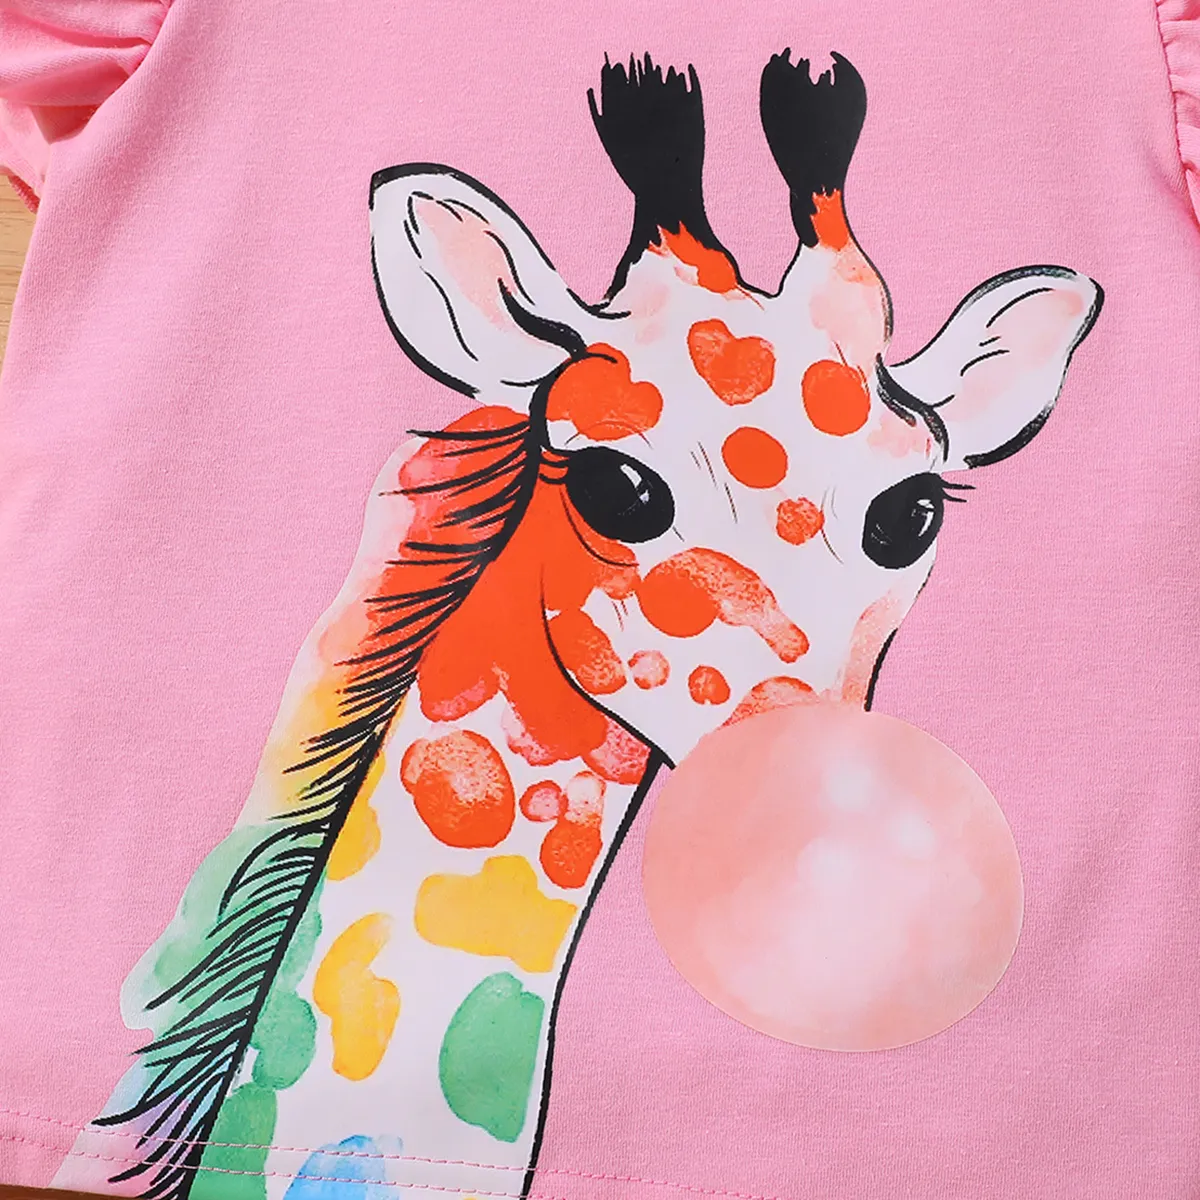 2 unidades Criança Menina Mangas franzidas Infantil Girafa conjuntos de camisetas Rosa big image 1